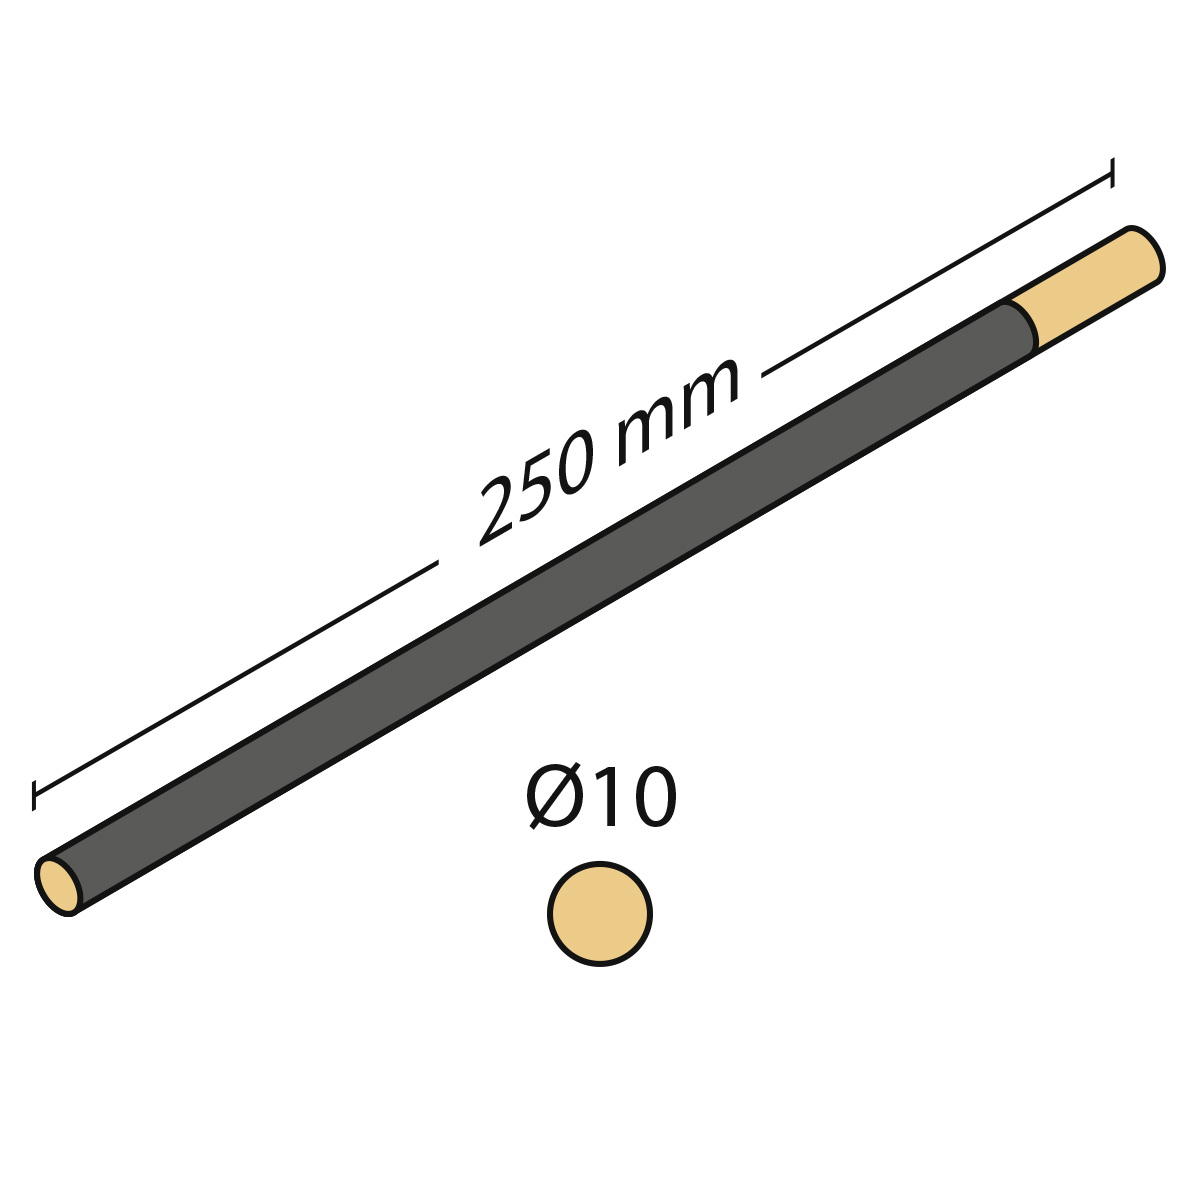 Cabron d'émeri rond, longueur 250 mm, Ø 10 mm, très fin, grain 400